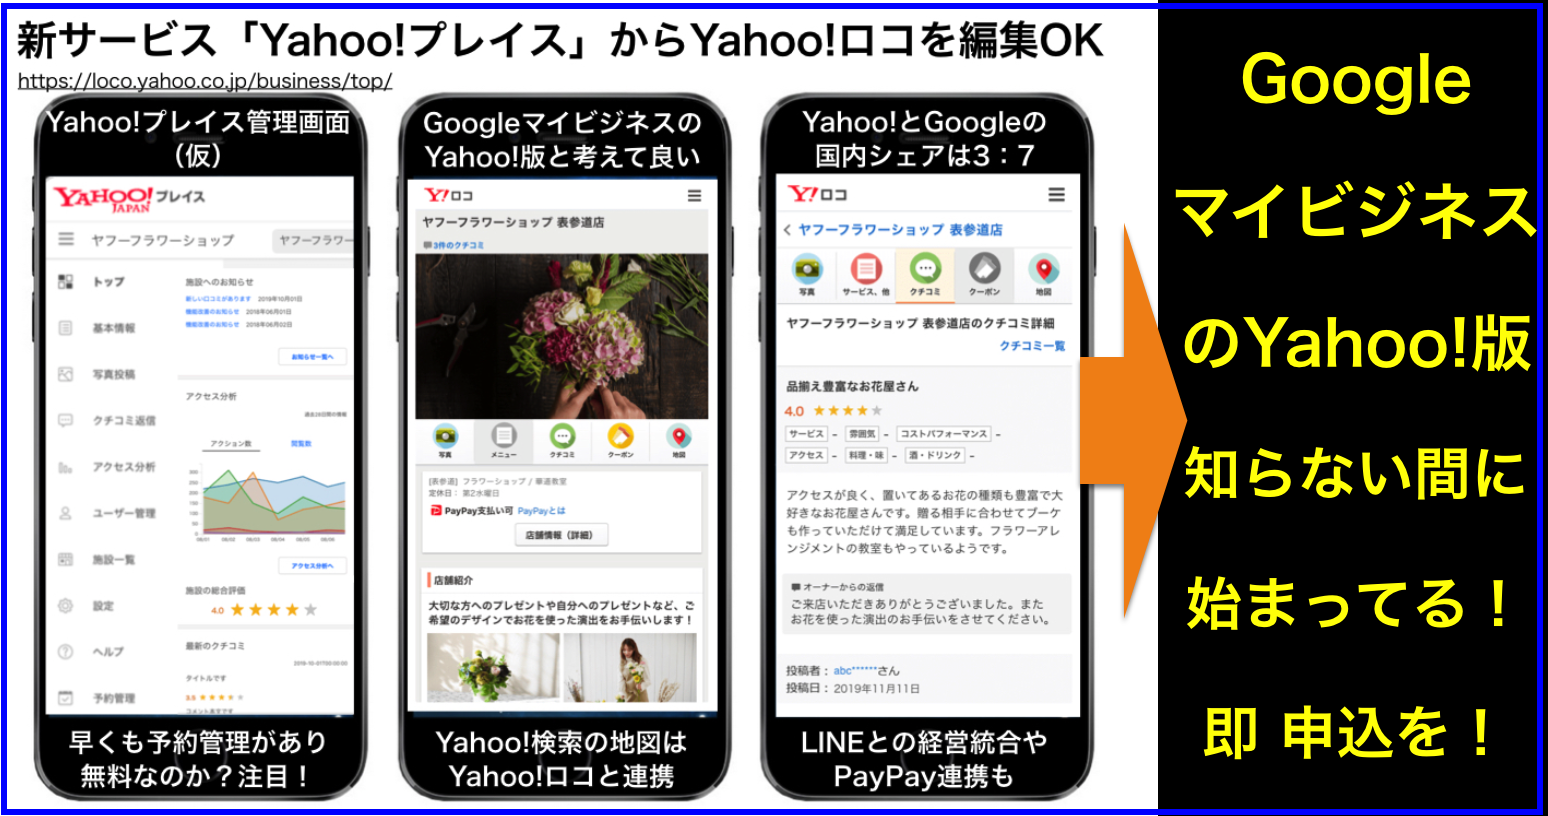 Yahoo!プレイスがGoogleマイビジネス対抗で新サービス開始